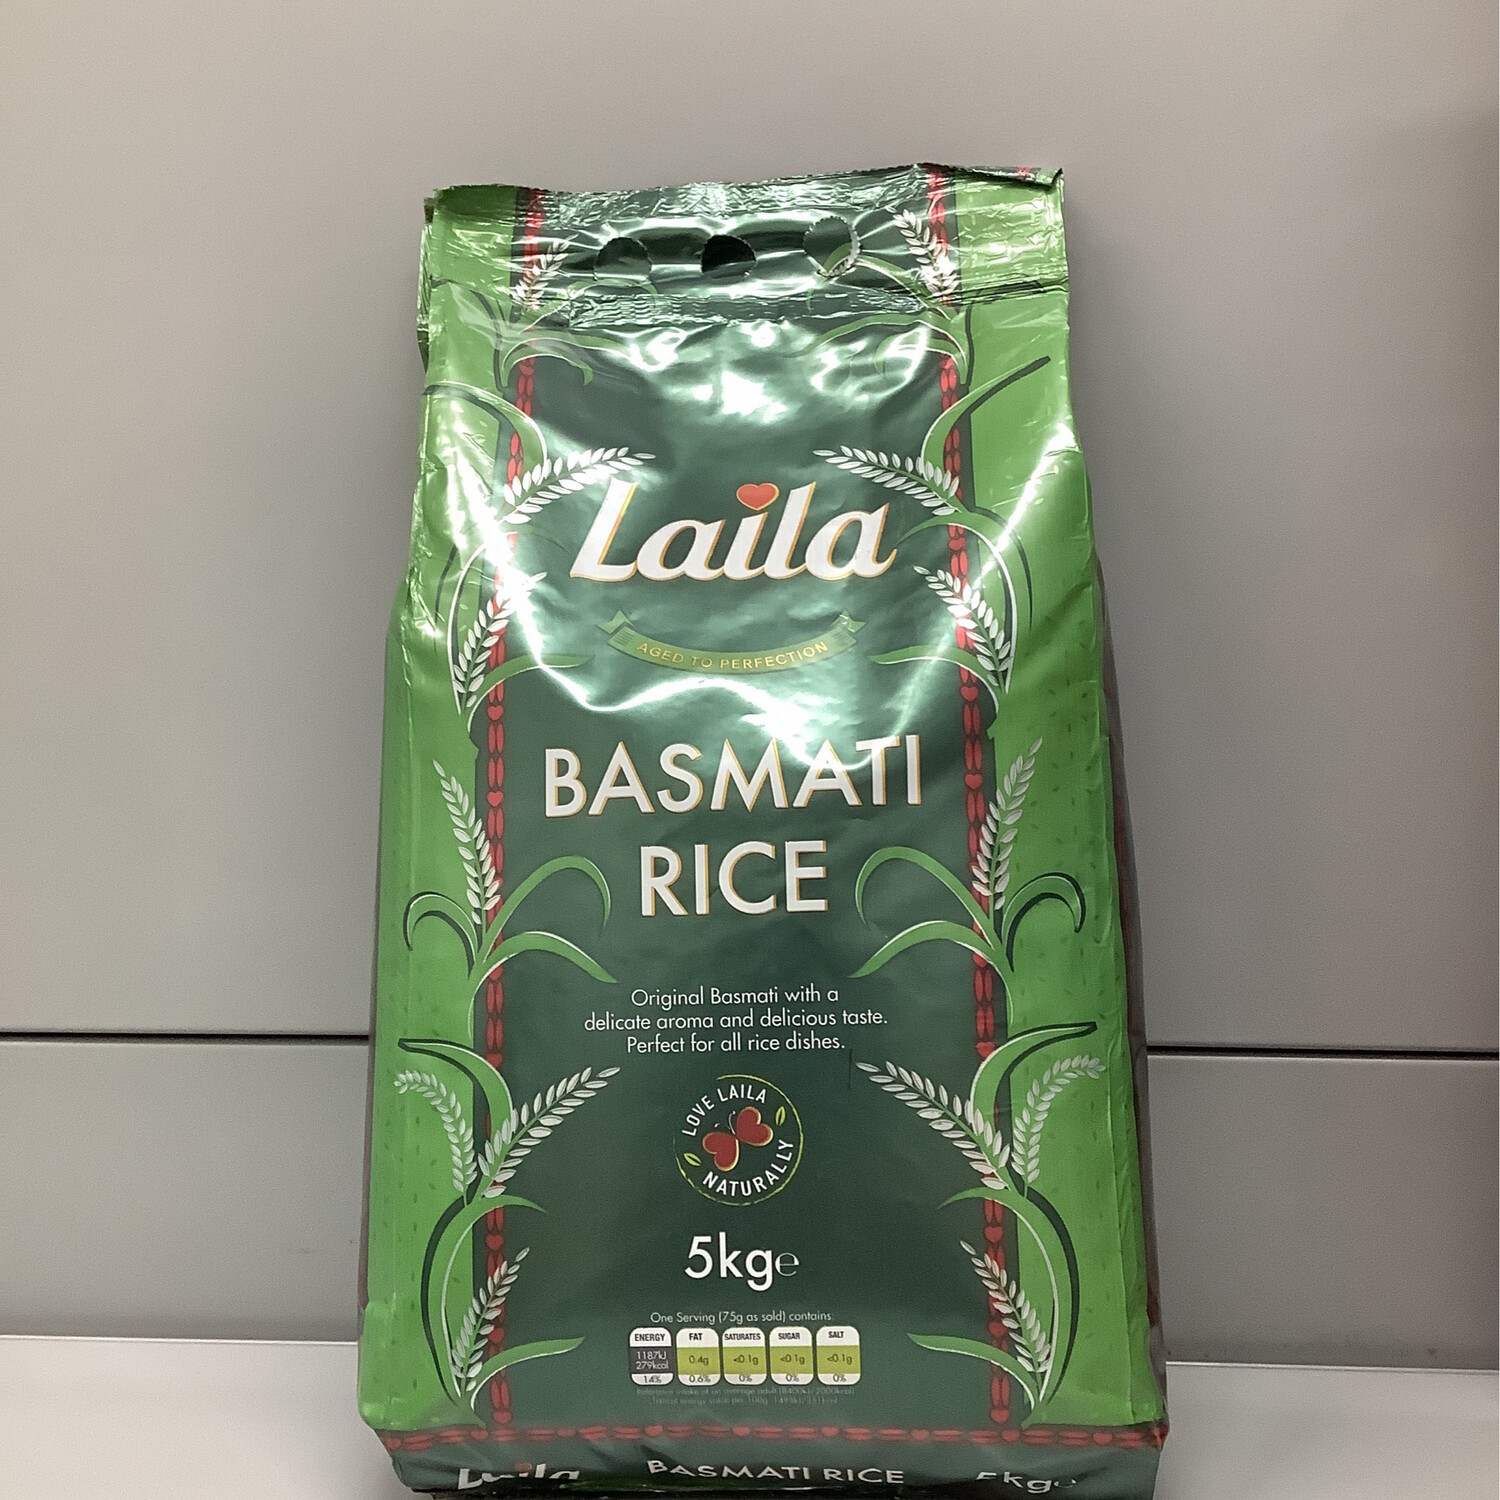 Laila Basmati Rice 5kg